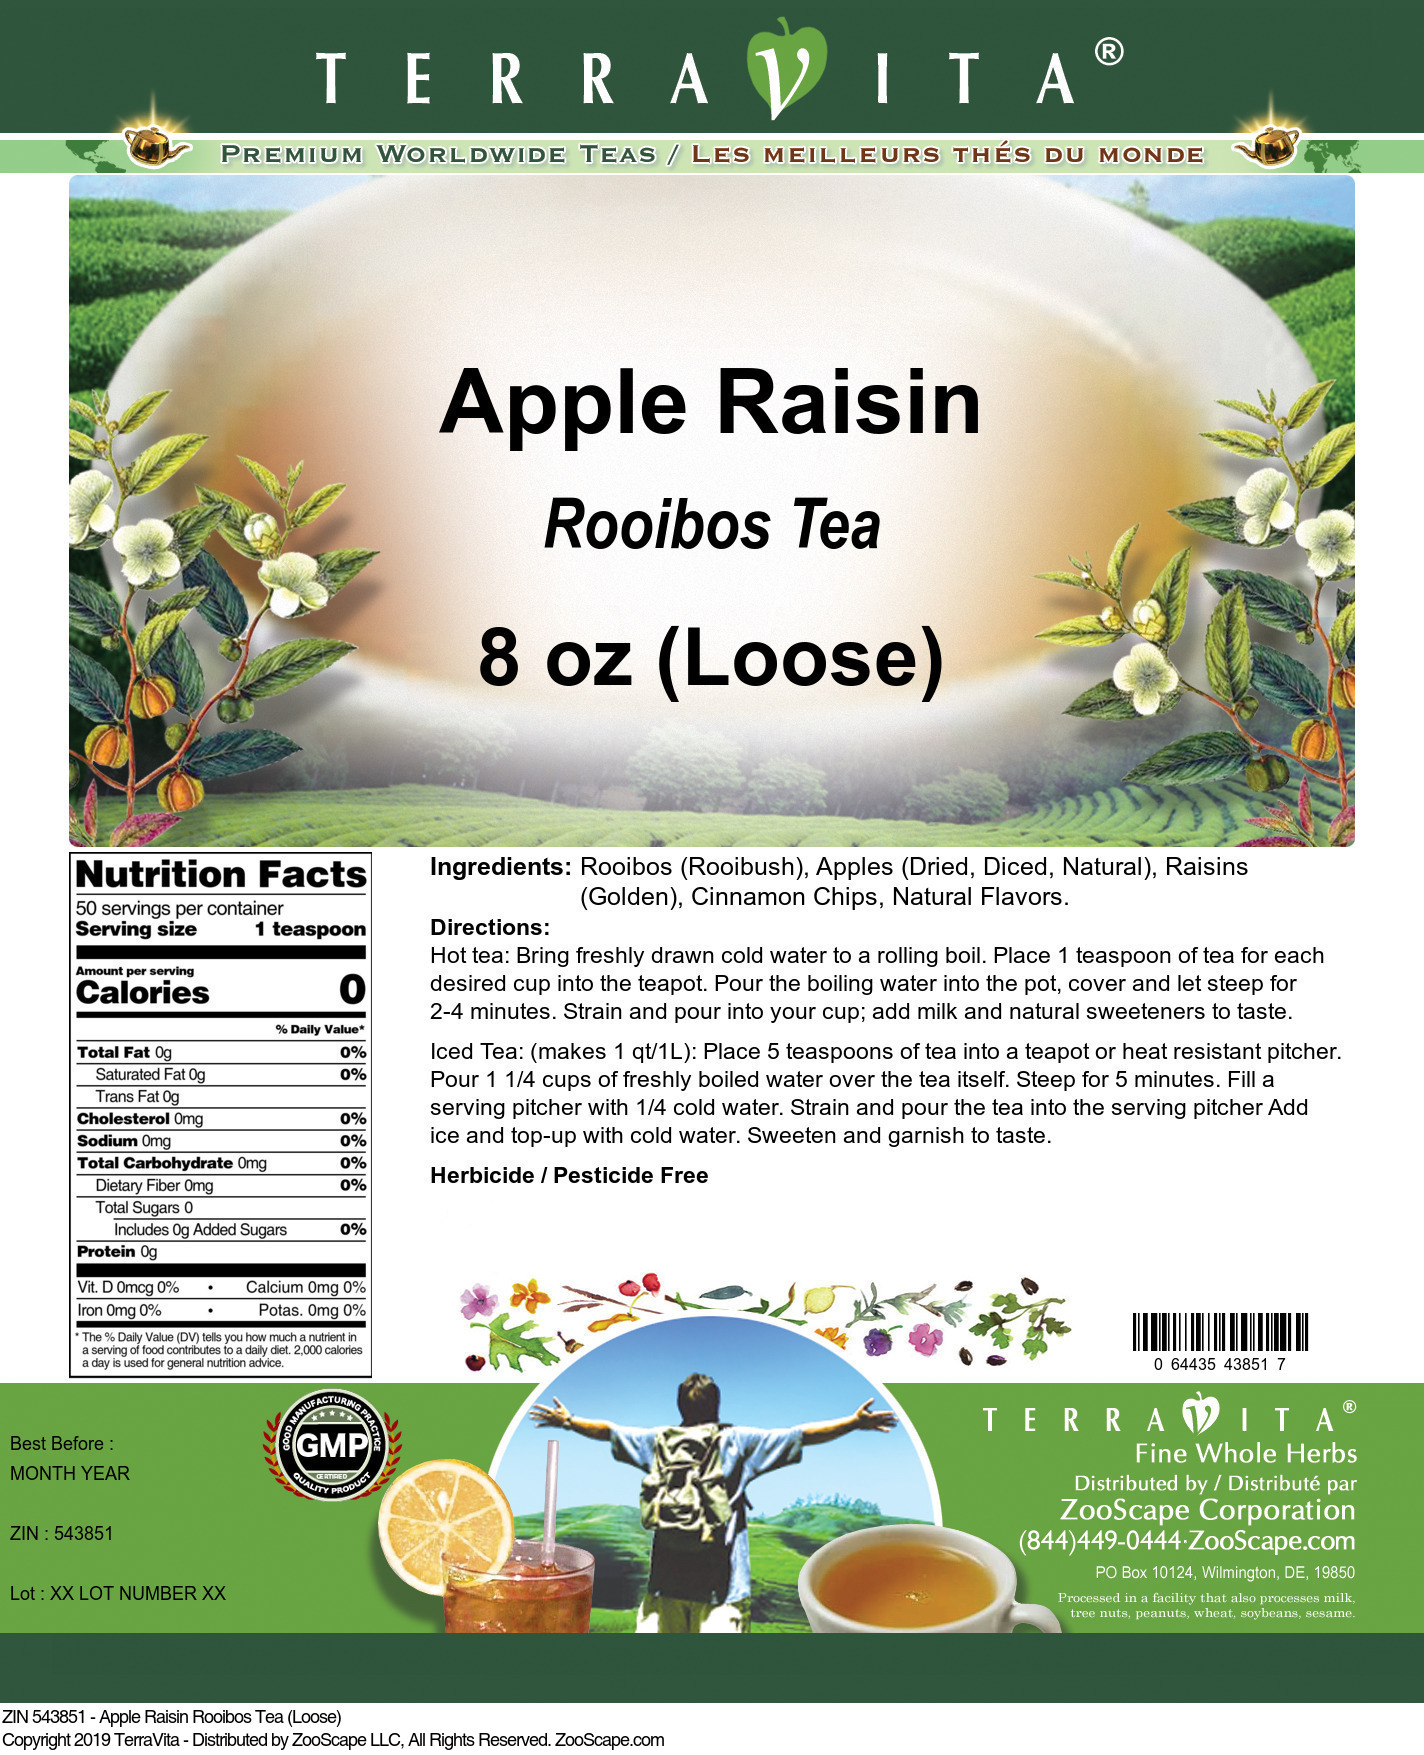 Apple Raisin Rooibos Tea (Loose) - Label